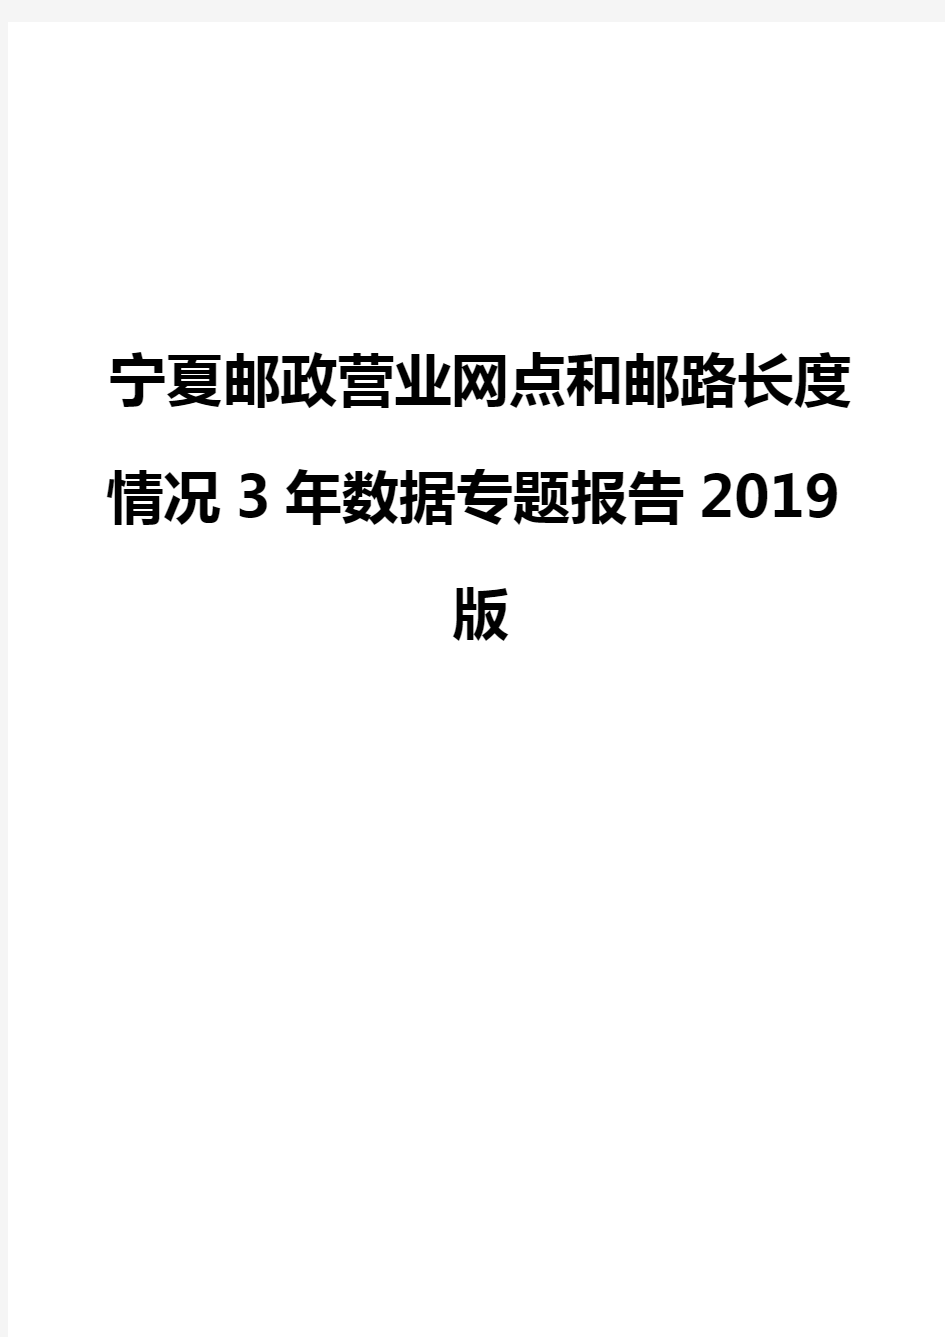 宁夏邮政营业网点和邮路长度情况3年数据专题报告2019版